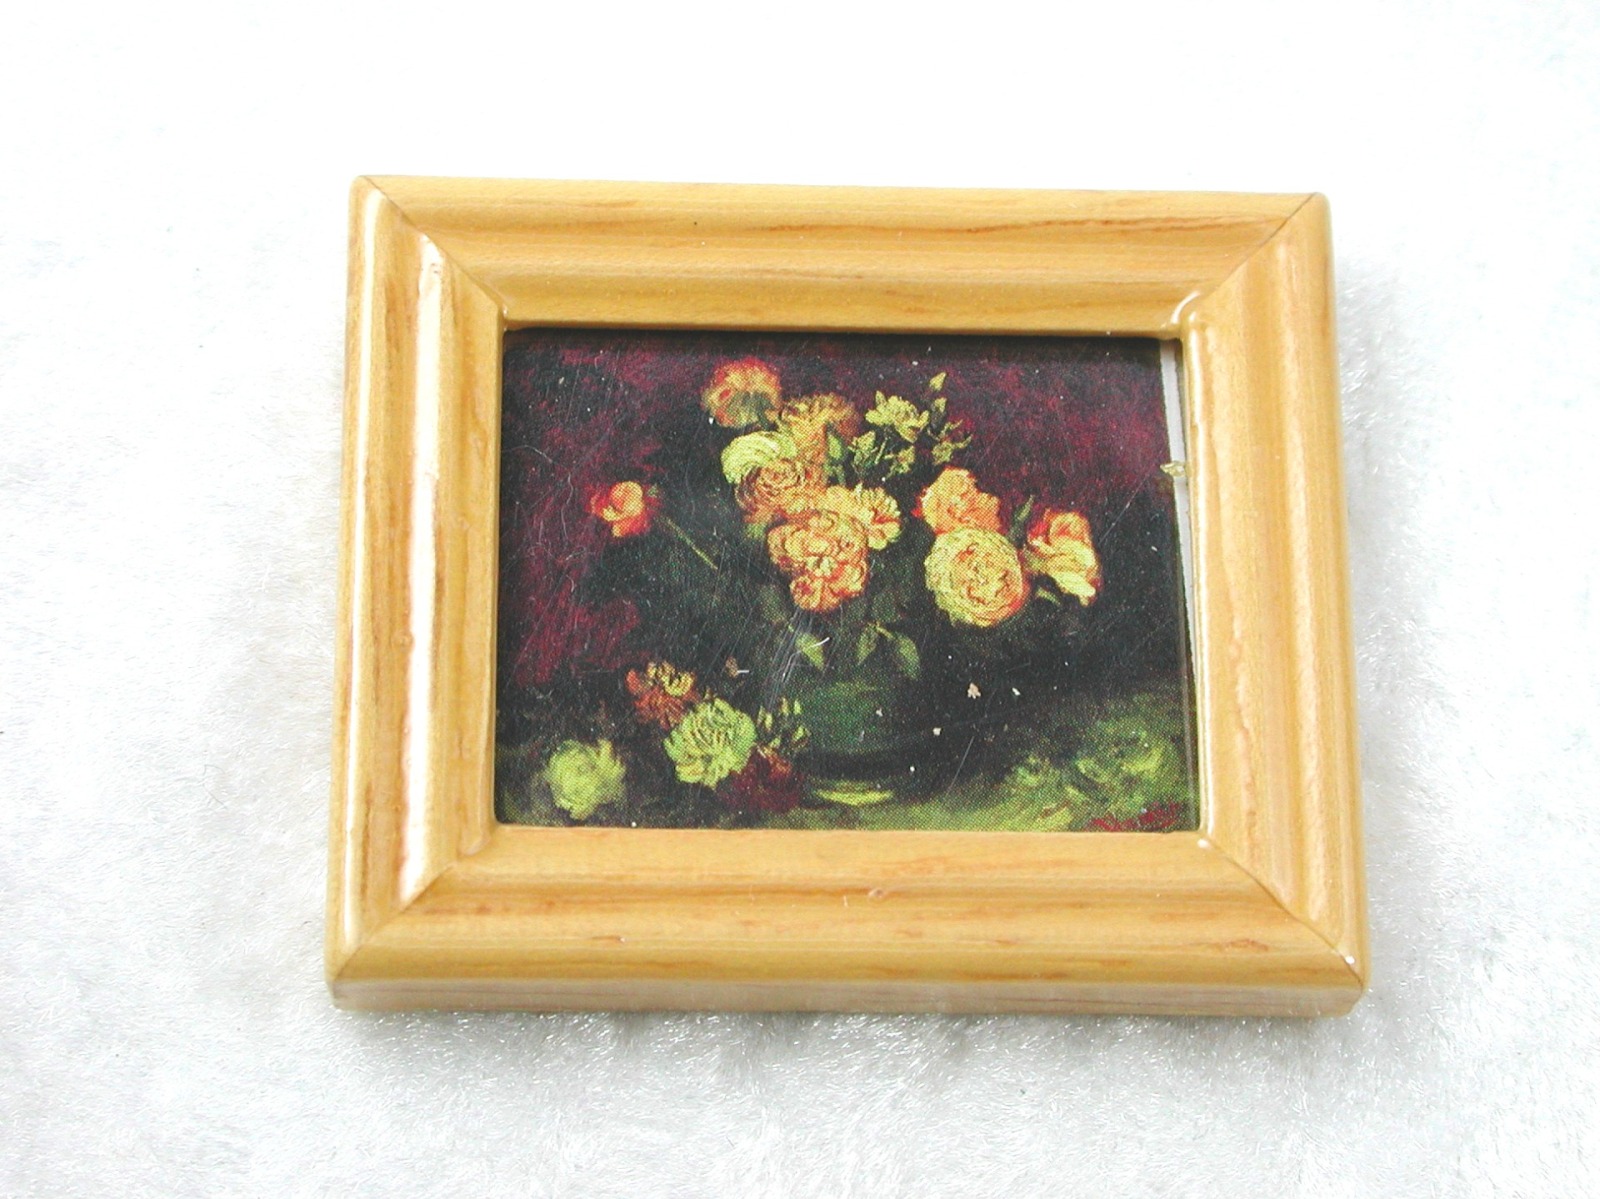 Gemäldekopie Gelbe Rosen im Holzrahmen 3x 4x 0,5 cm